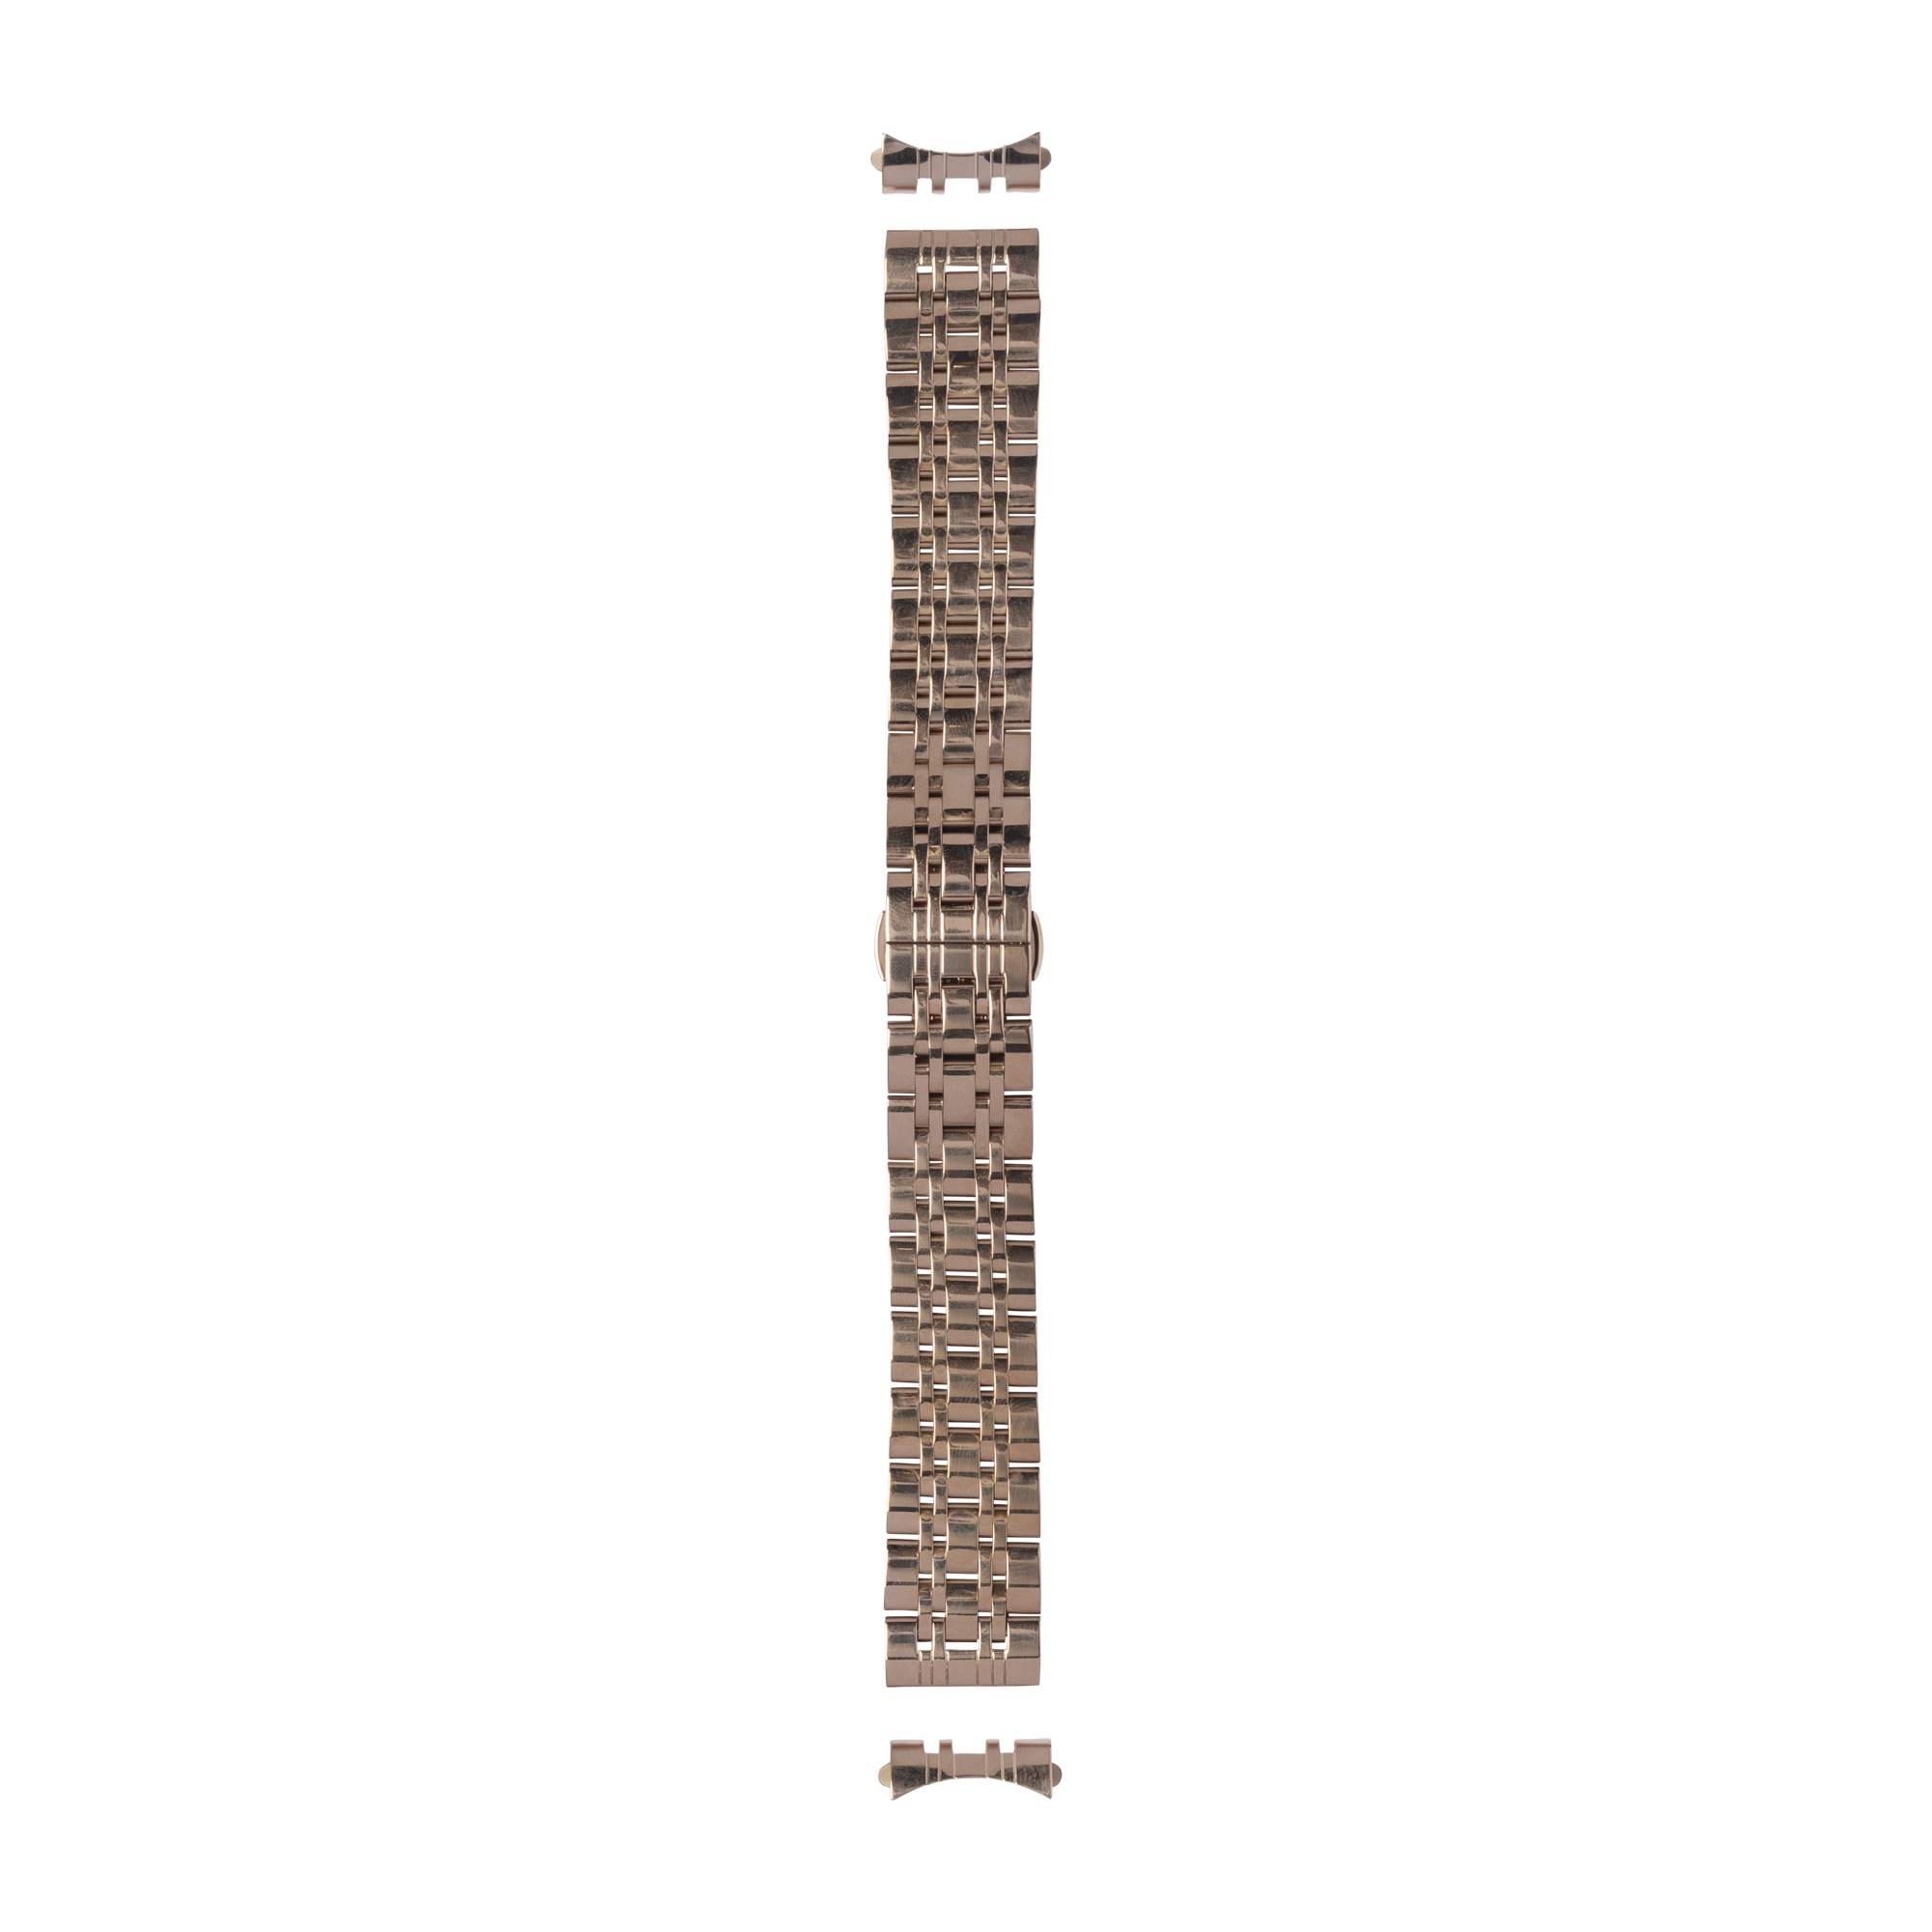 [Curved] Steel Bracelet 2 - Rose Gold